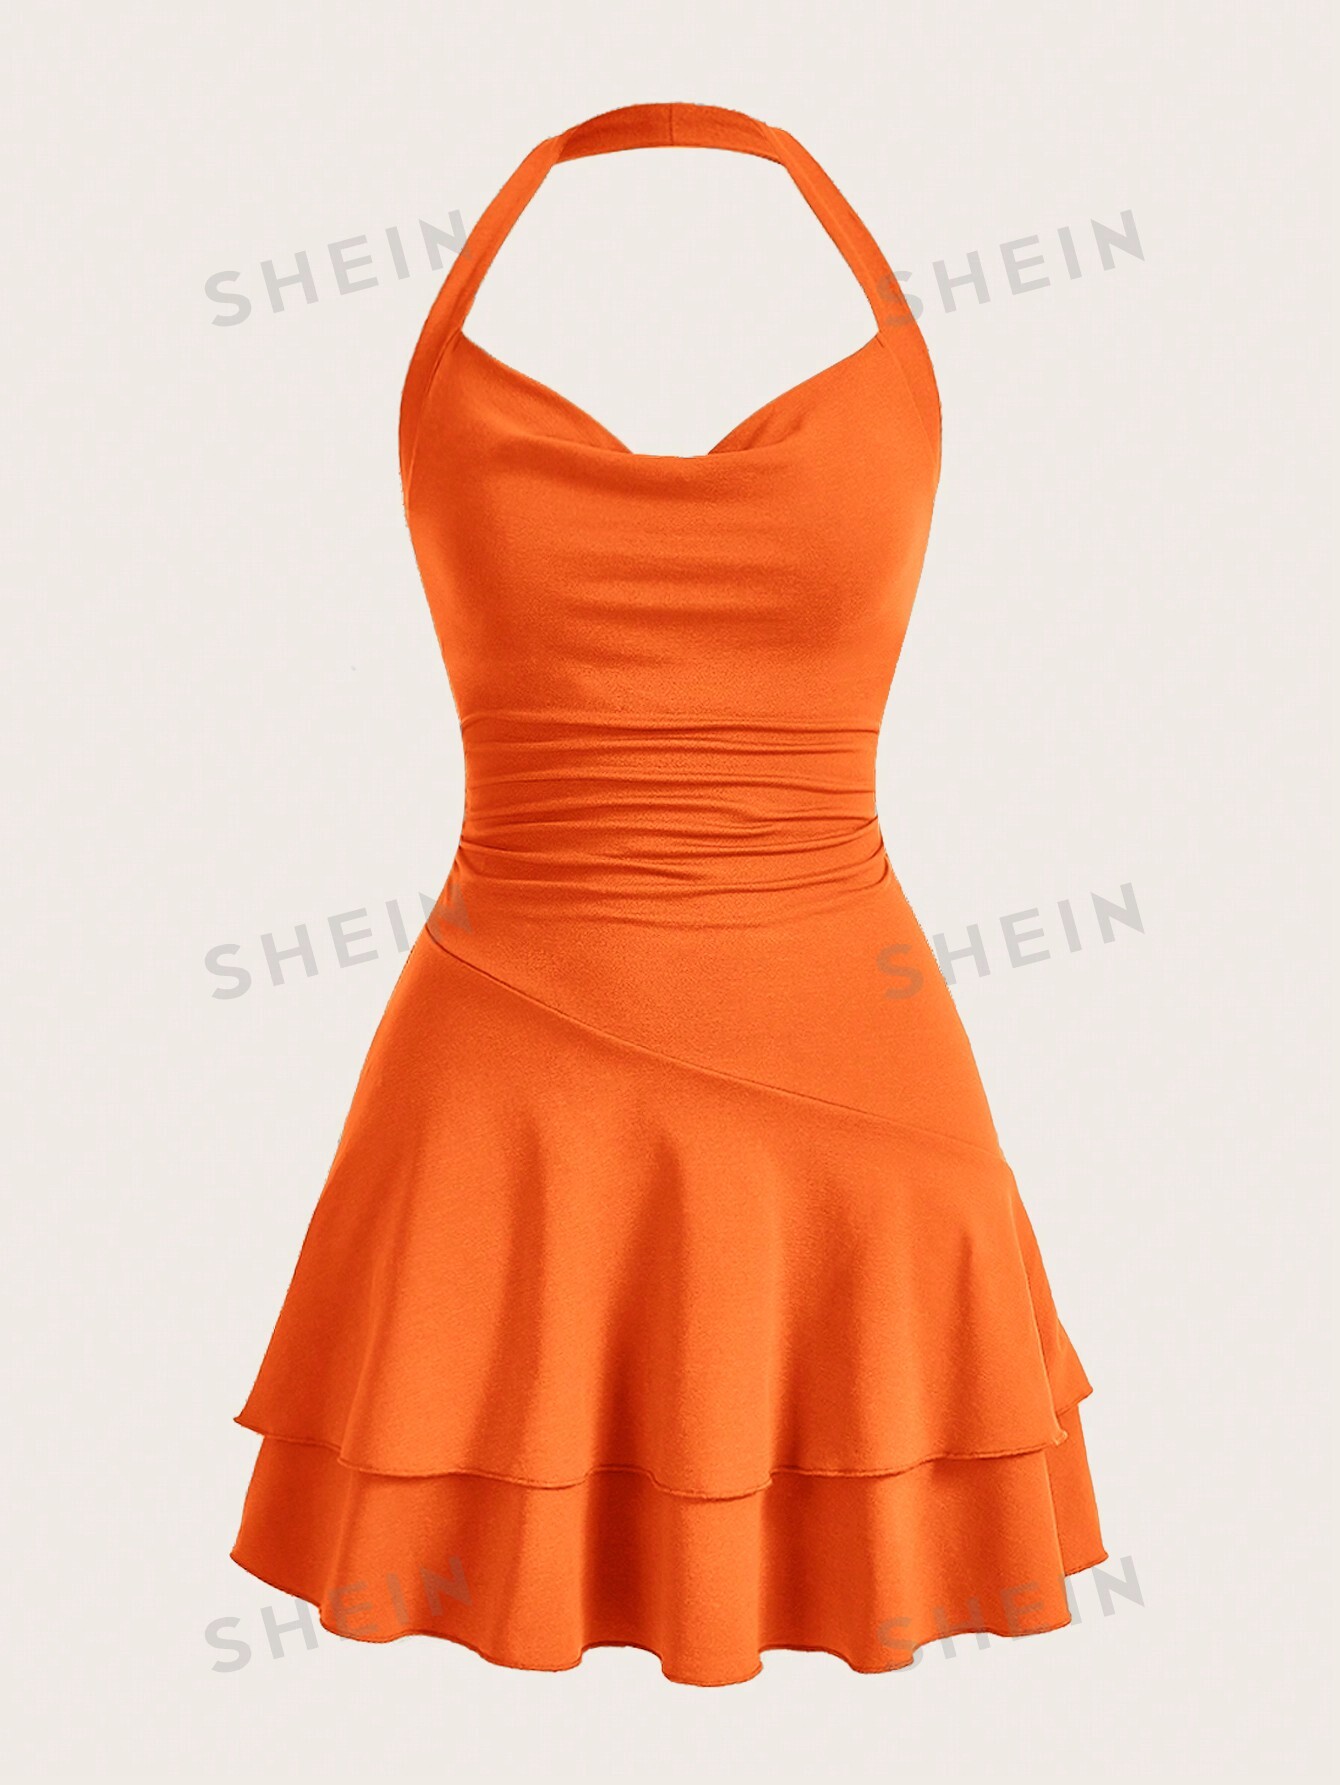 SHEIN MOD однотонное женское платье с бретелькой на шее и многослойным подолом, апельсин твердый однотонный купальник из двух частей с бретелькой на шее и открытой спиной красный